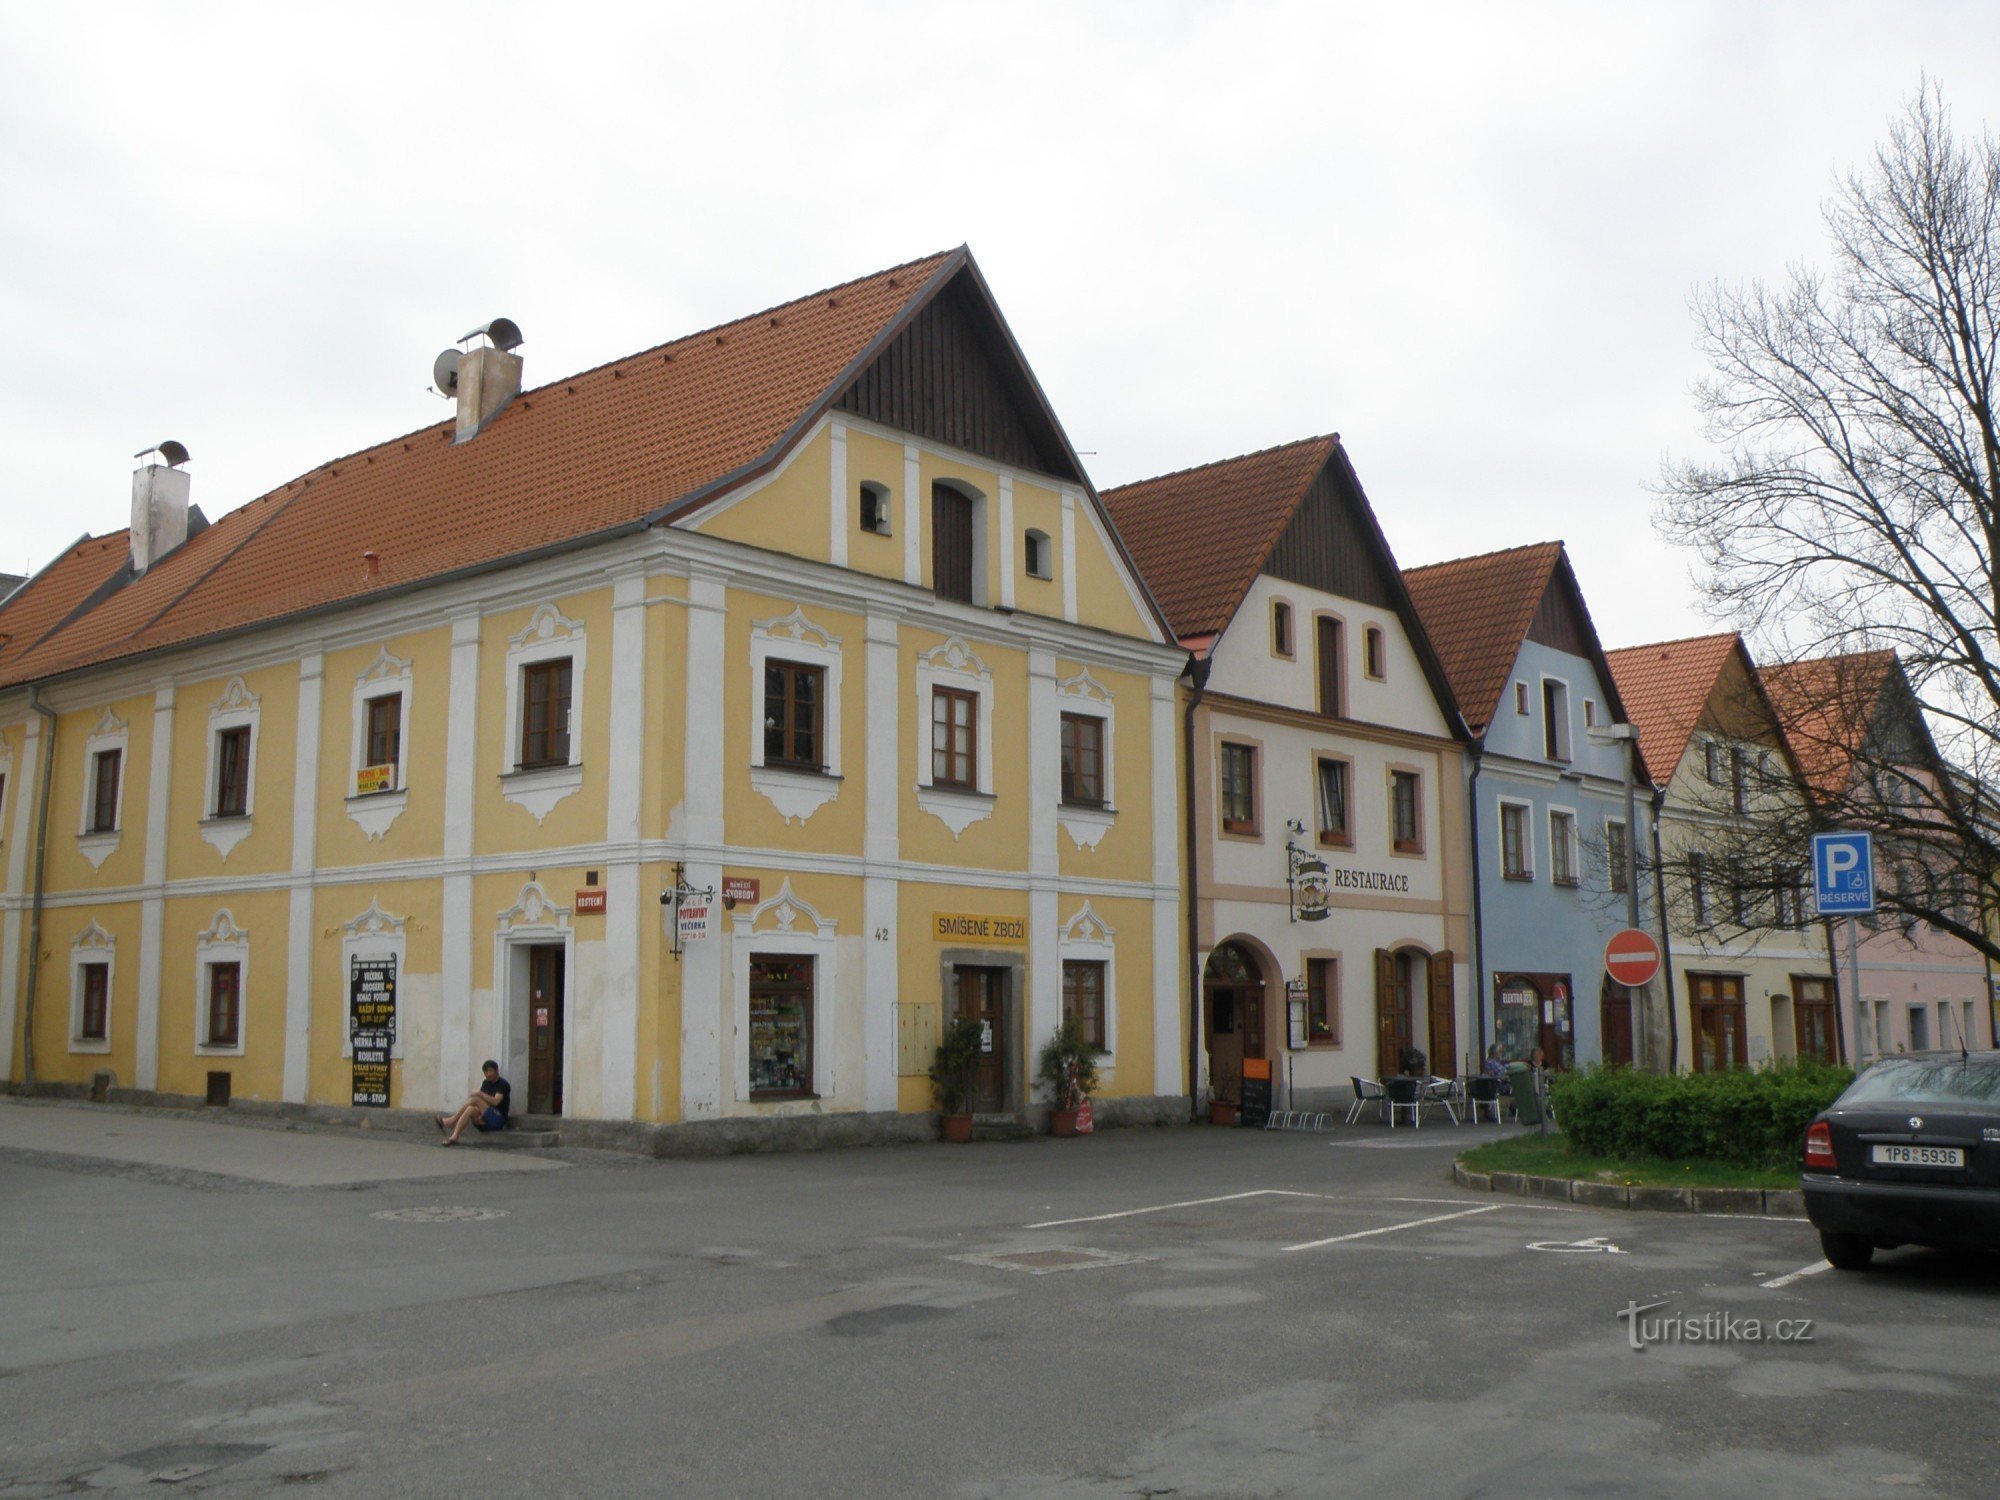 historiske huse på pladsen